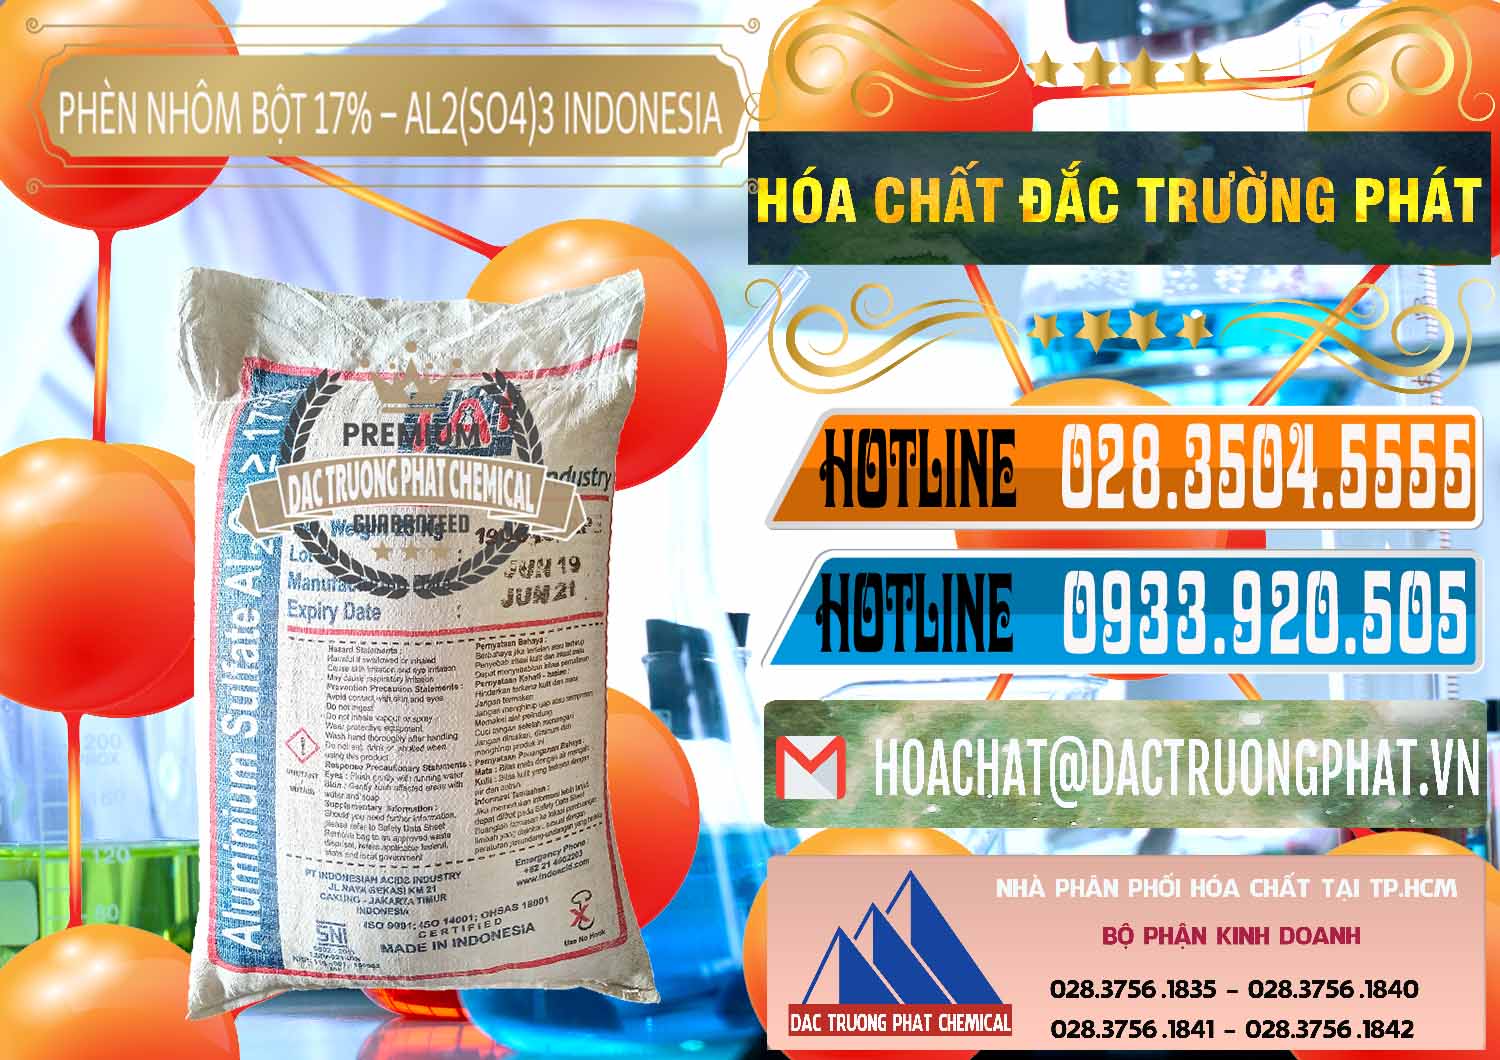 Nơi phân phối và bán Phèn Nhôm Bột - Al2(SO4)3 17% bao 25kg Indonesia - 0114 - Công ty chuyên phân phối - nhập khẩu hóa chất tại TP.HCM - stmp.net